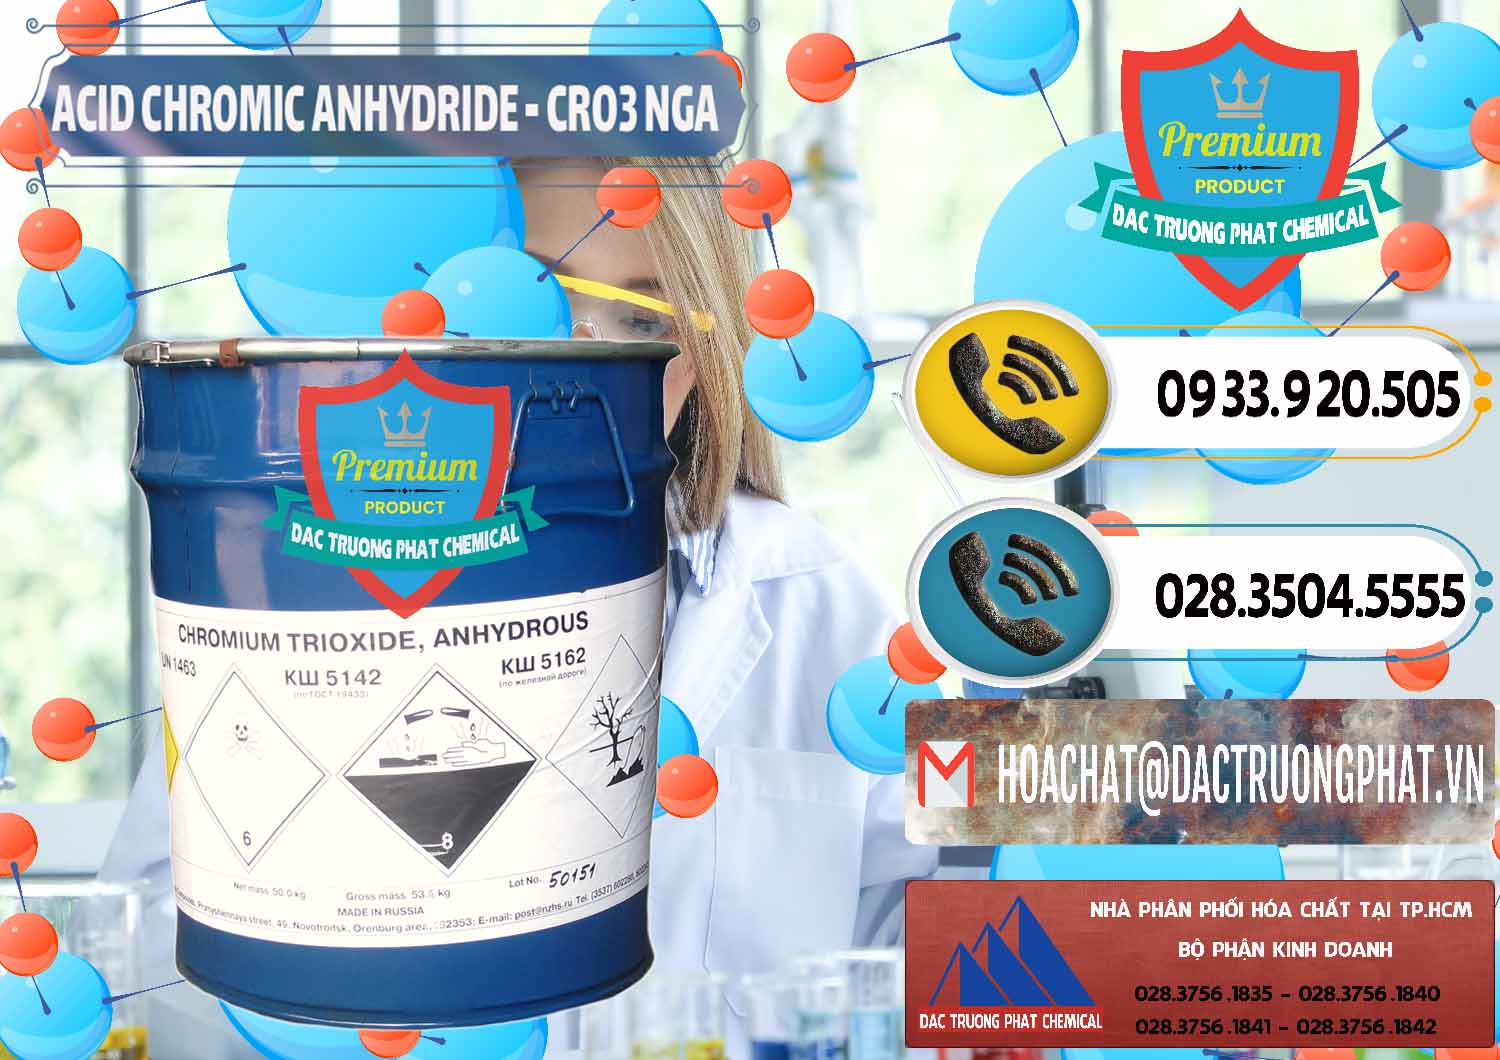 Chuyên bán - cung ứng Acid Chromic Anhydride - Cromic CRO3 Nga Russia - 0006 - Công ty chuyên bán - phân phối hóa chất tại TP.HCM - hoachatdetnhuom.vn